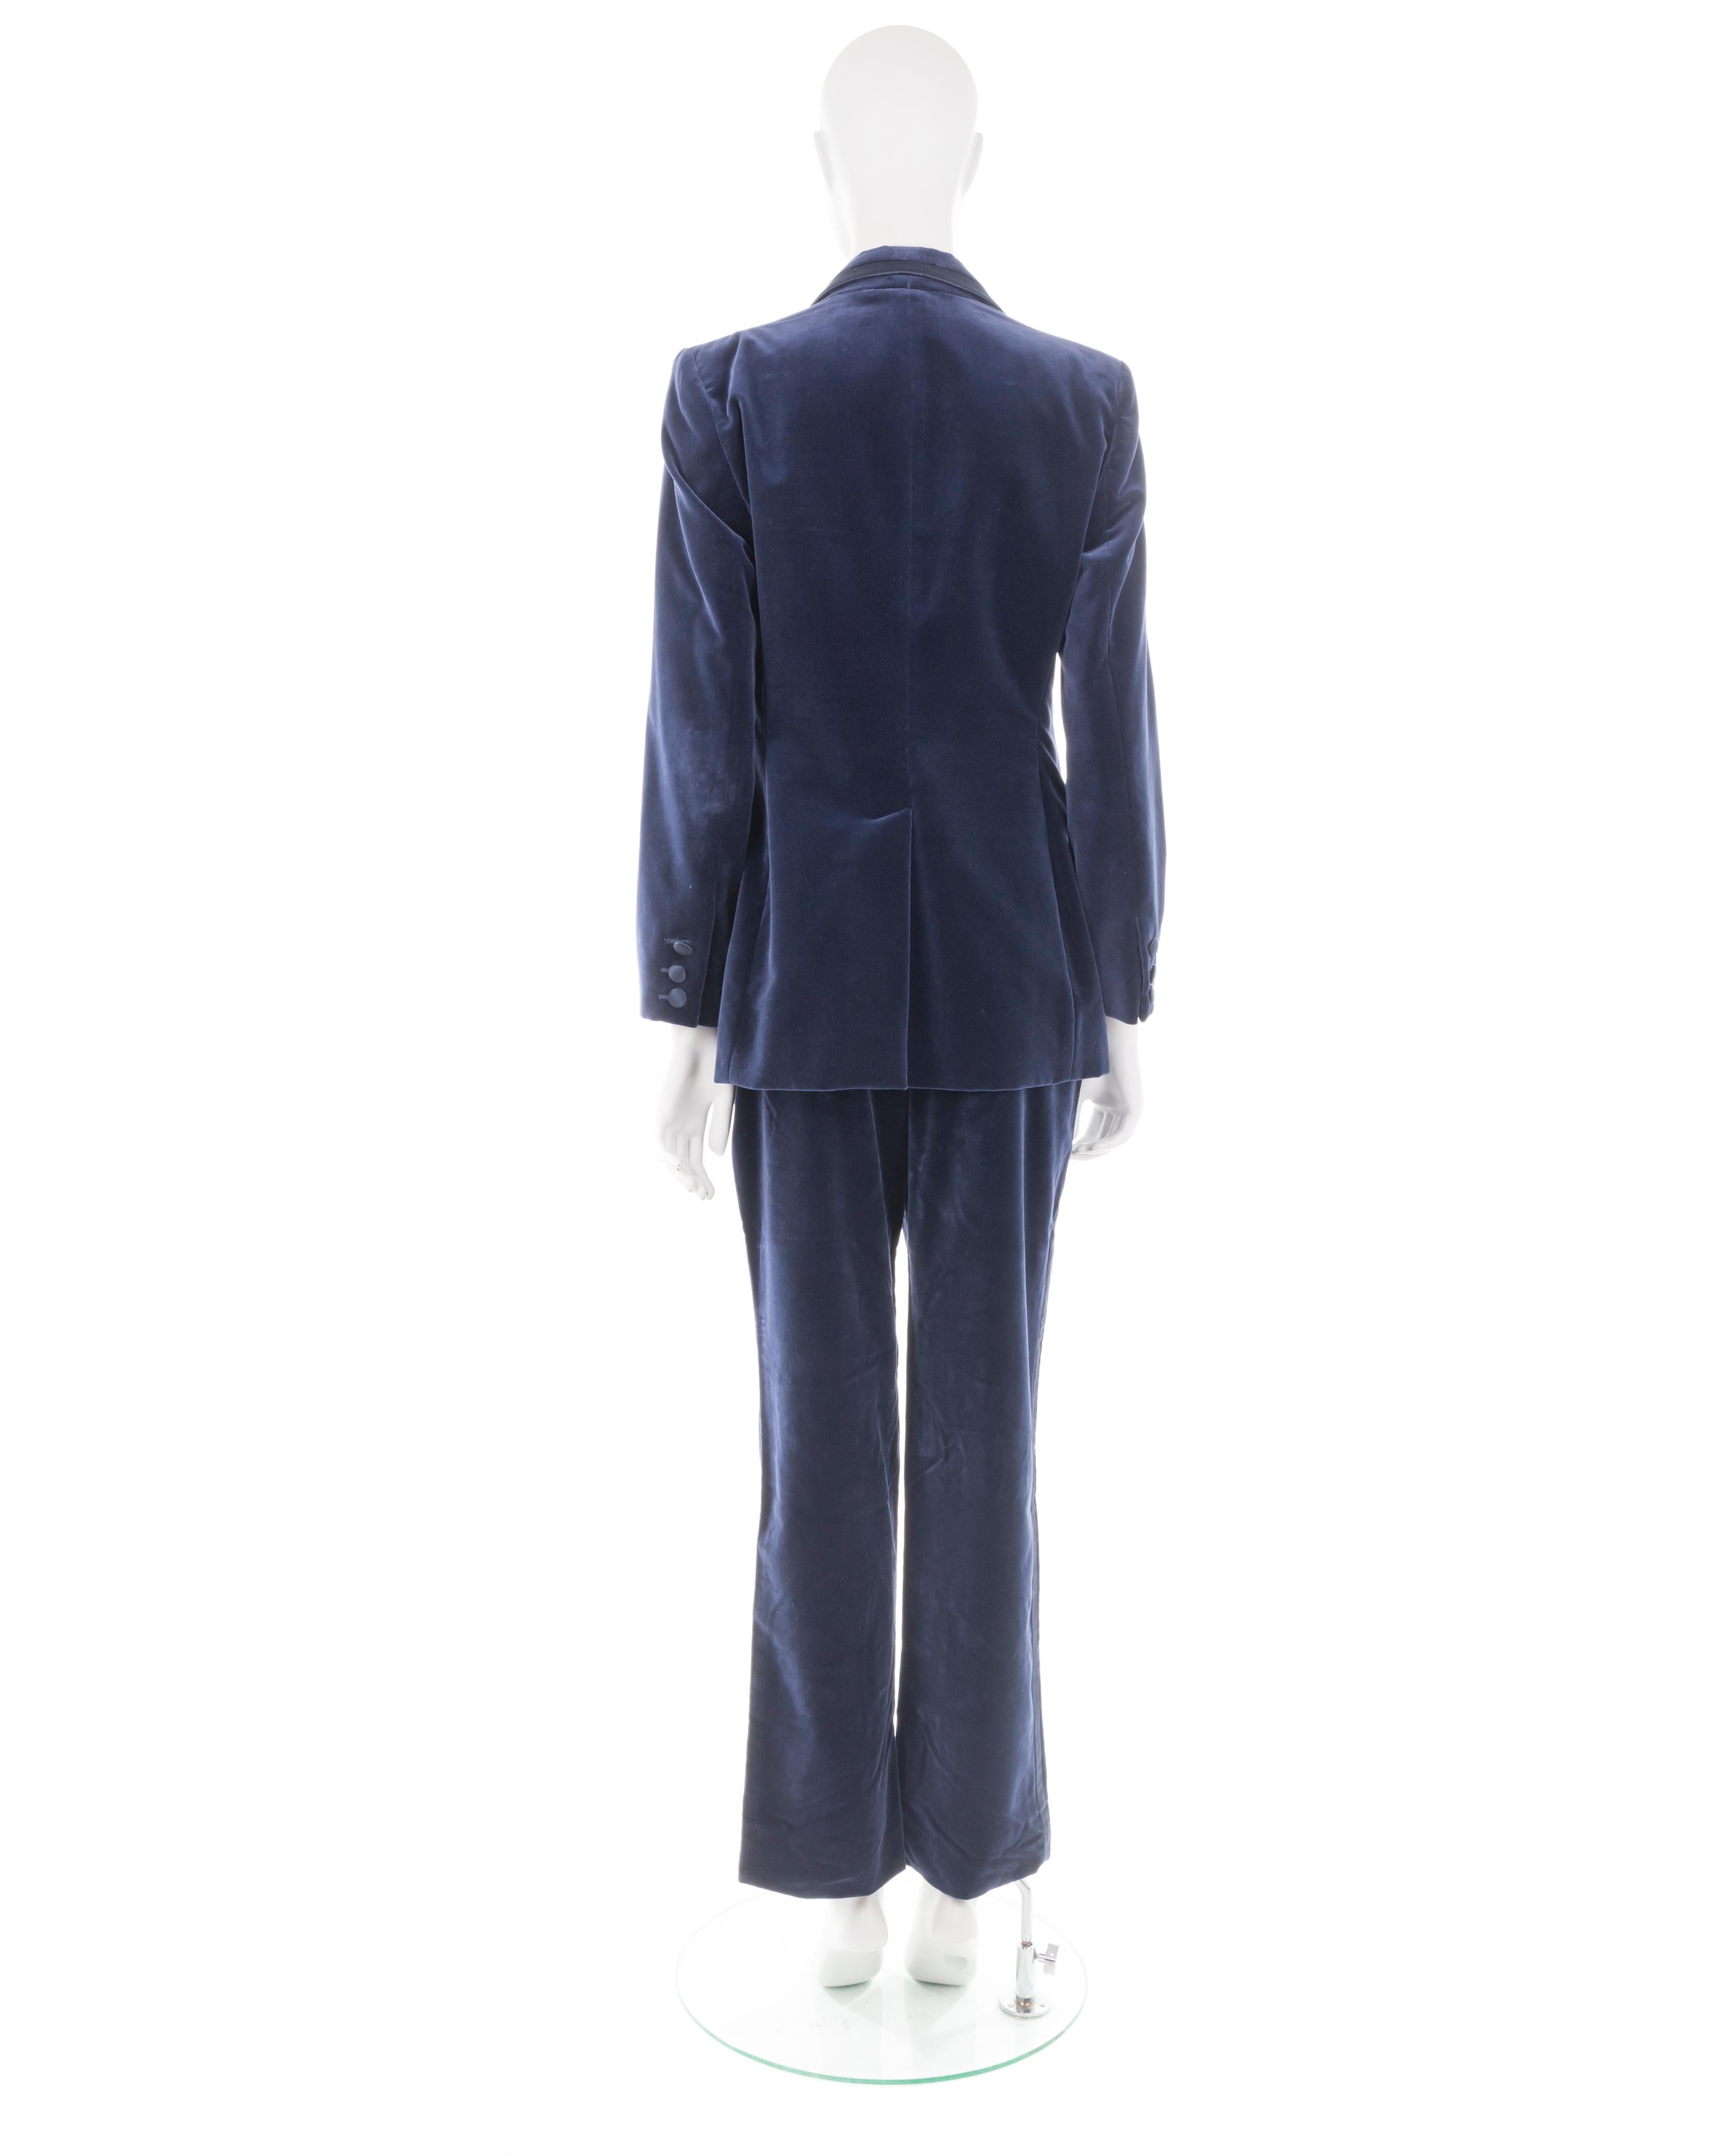 Women's or Men's Gucci F/W 1996 blue velvet jacket and pant tuxedo suit